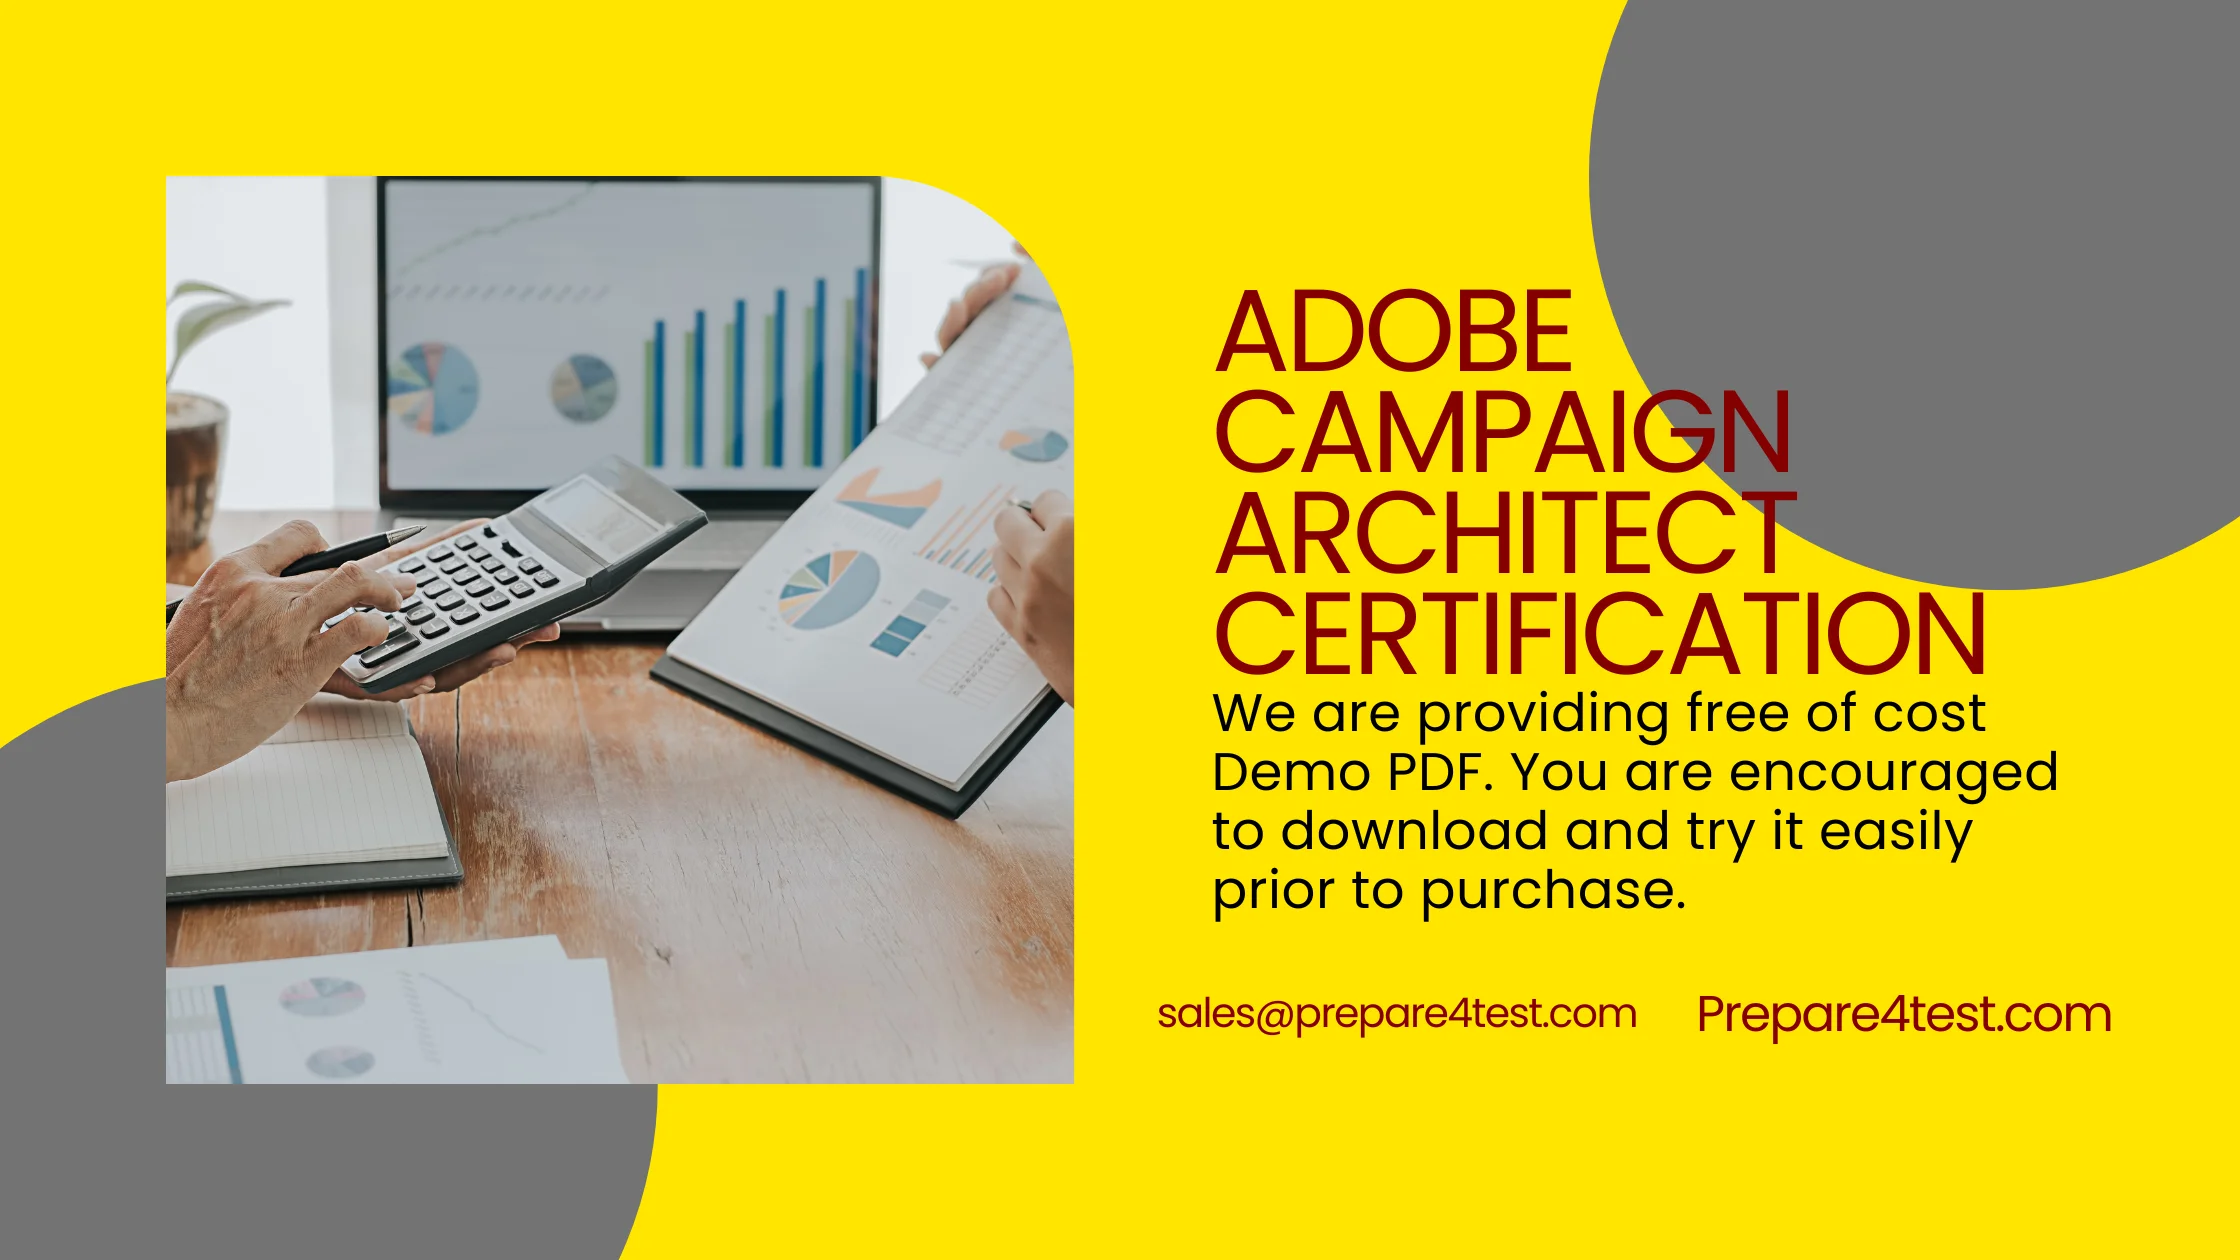 Adobe Campaign Architect Certification promo codes